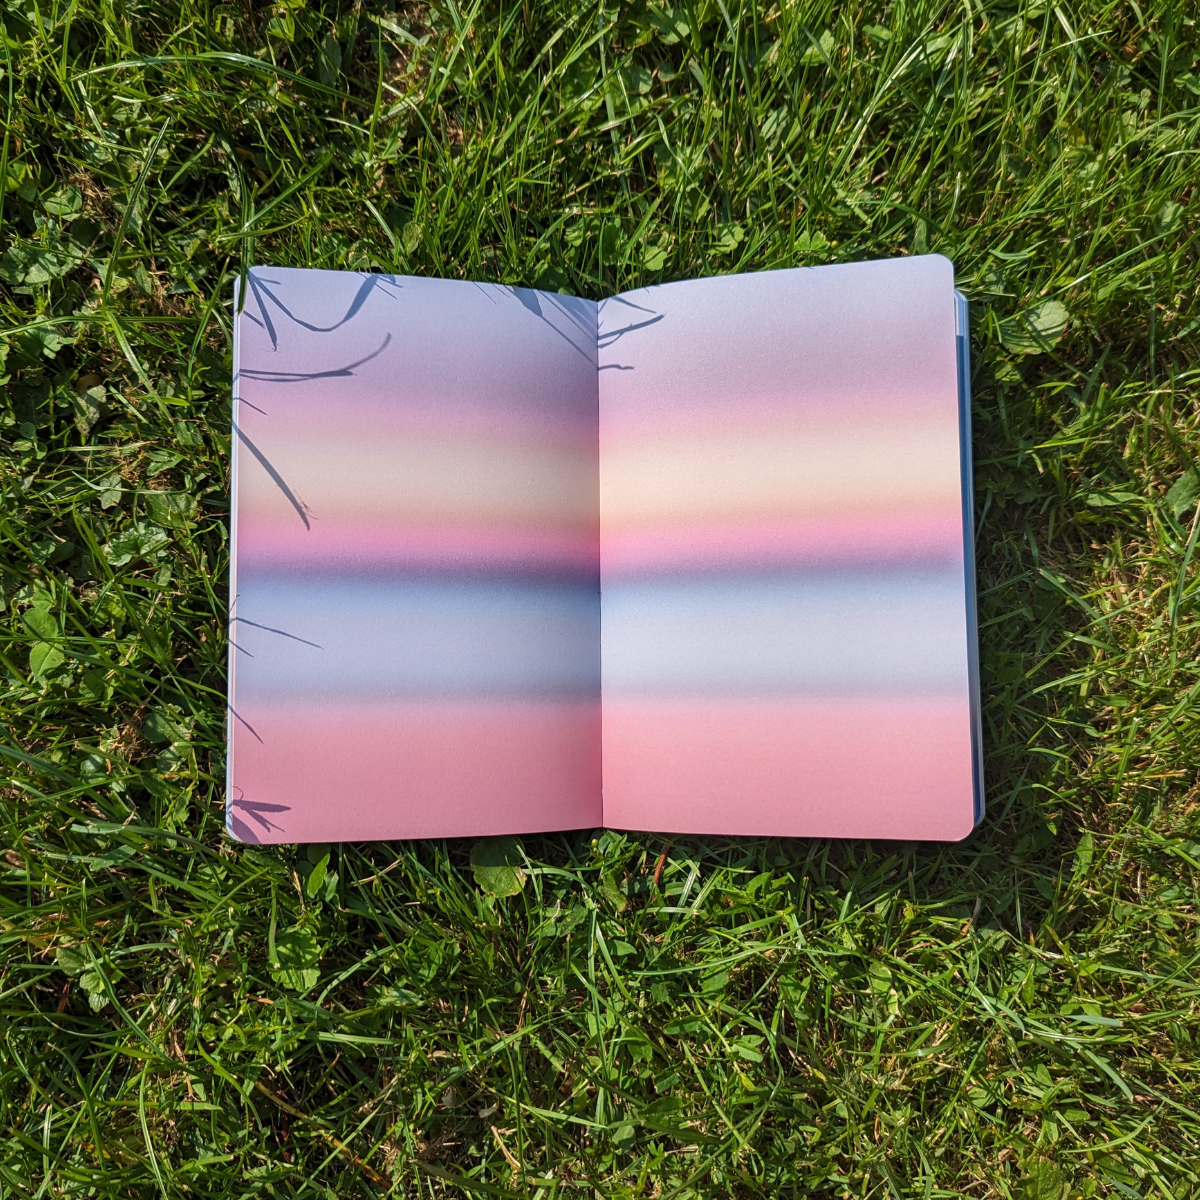 Les pages blanches d’un cahier, parfois intimidantes, ont été transformées en paysages colorés.